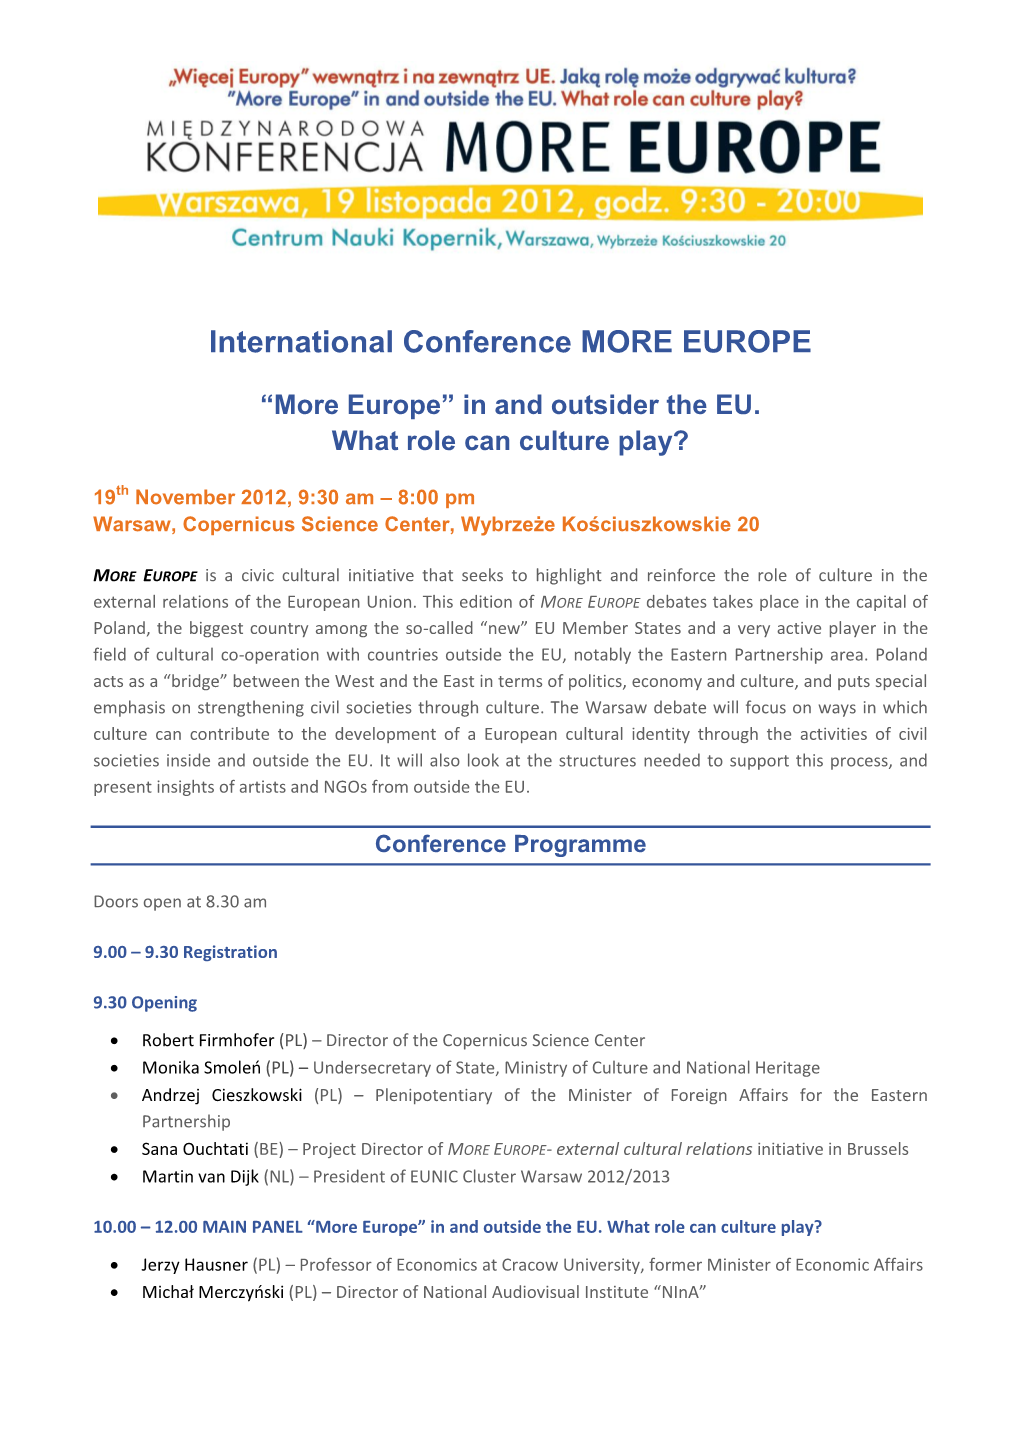 More Europe Warsaw Debate Programme